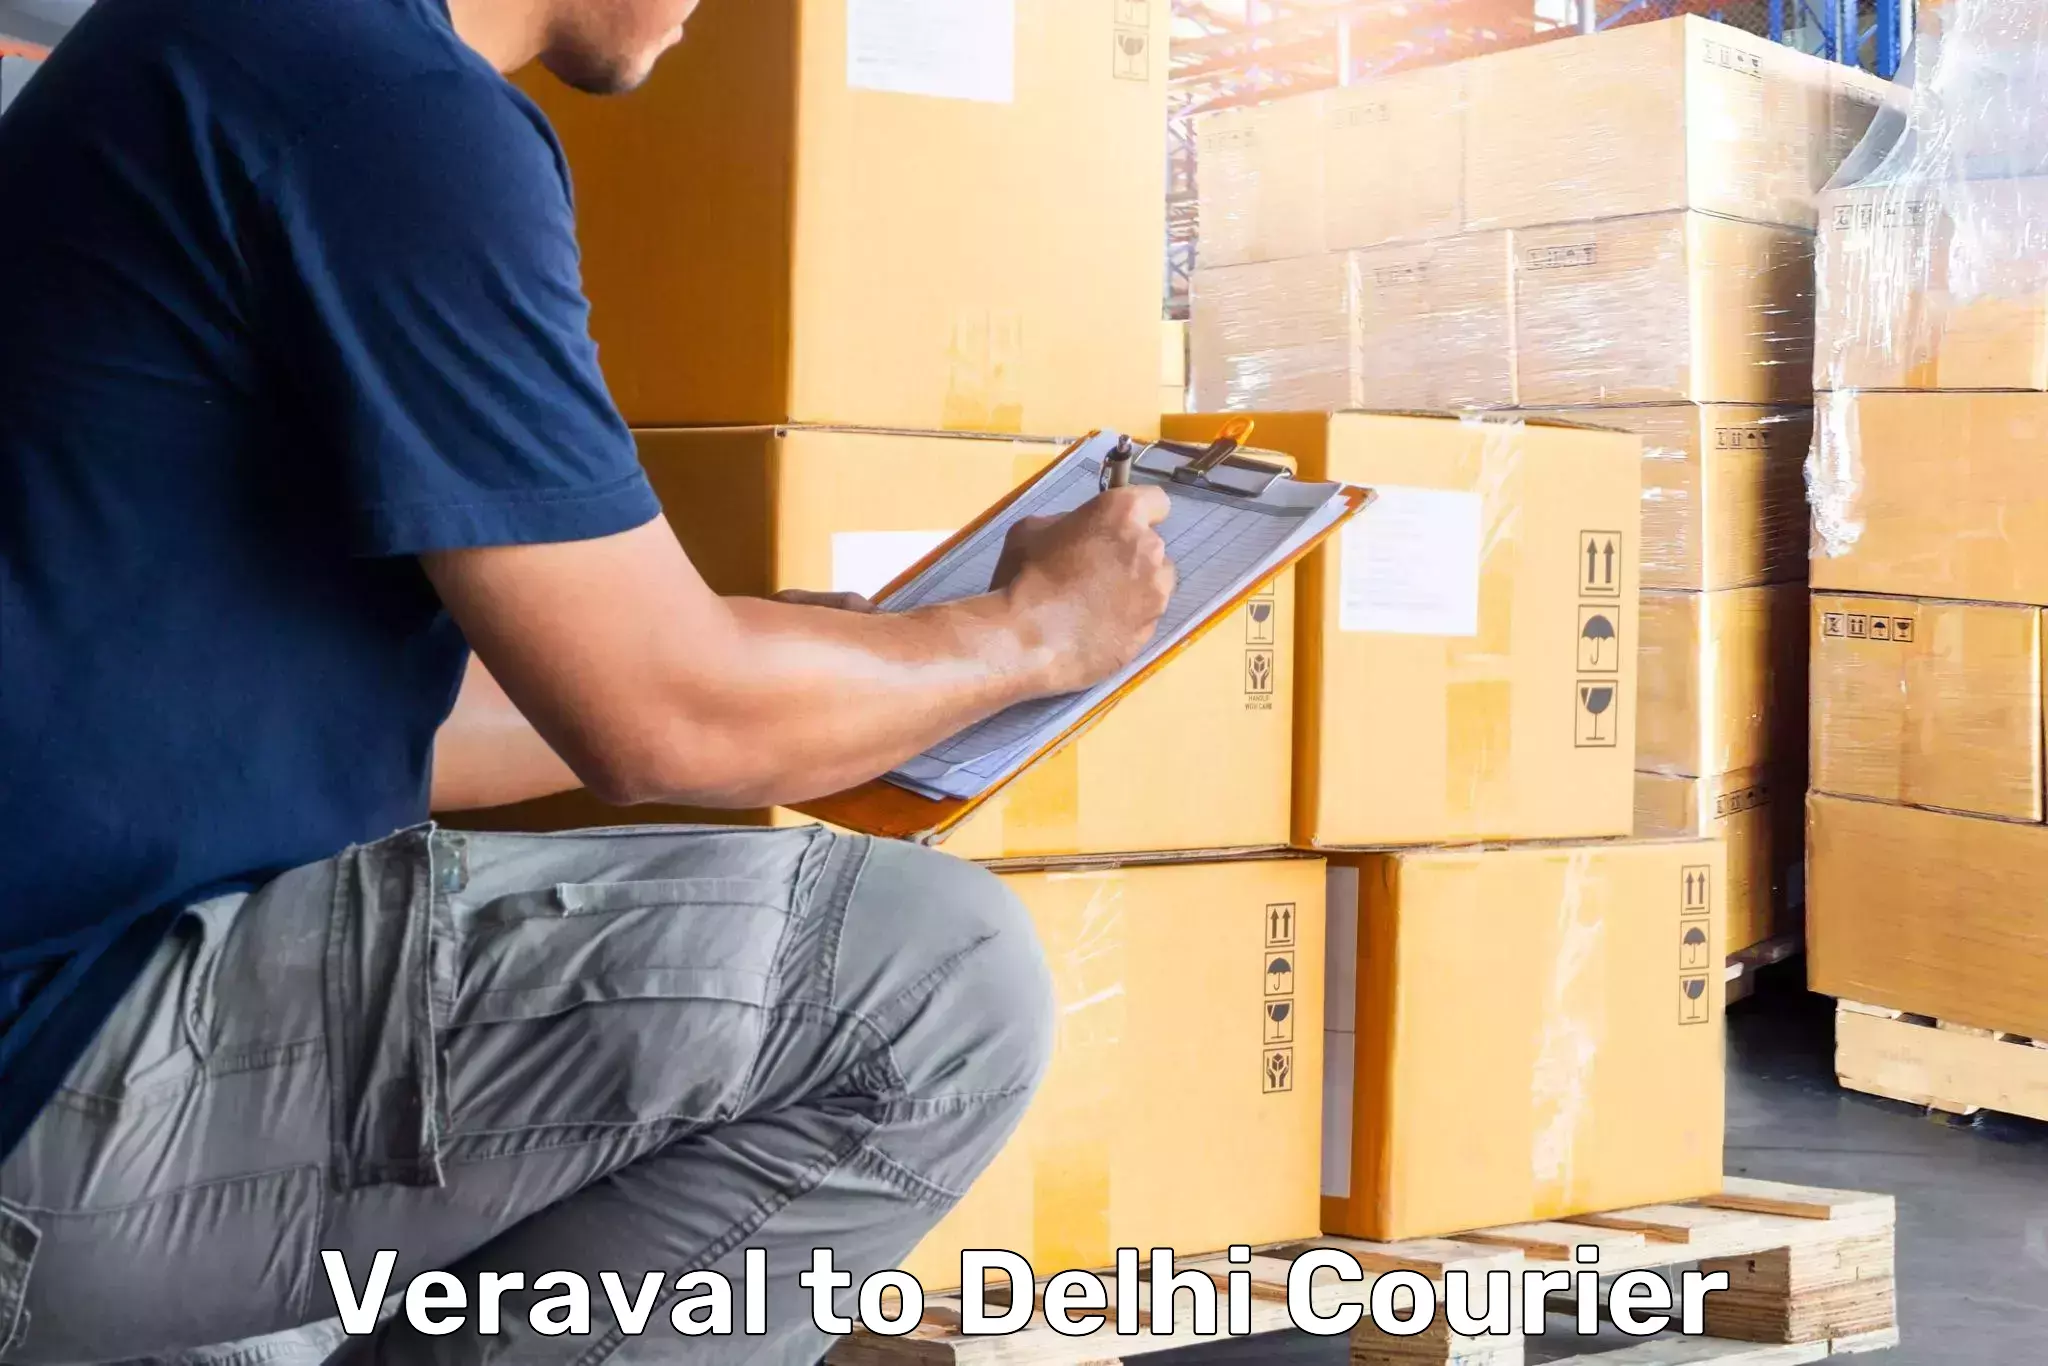 Reliable baggage delivery in Veraval to Jamia Millia Islamia New Delhi